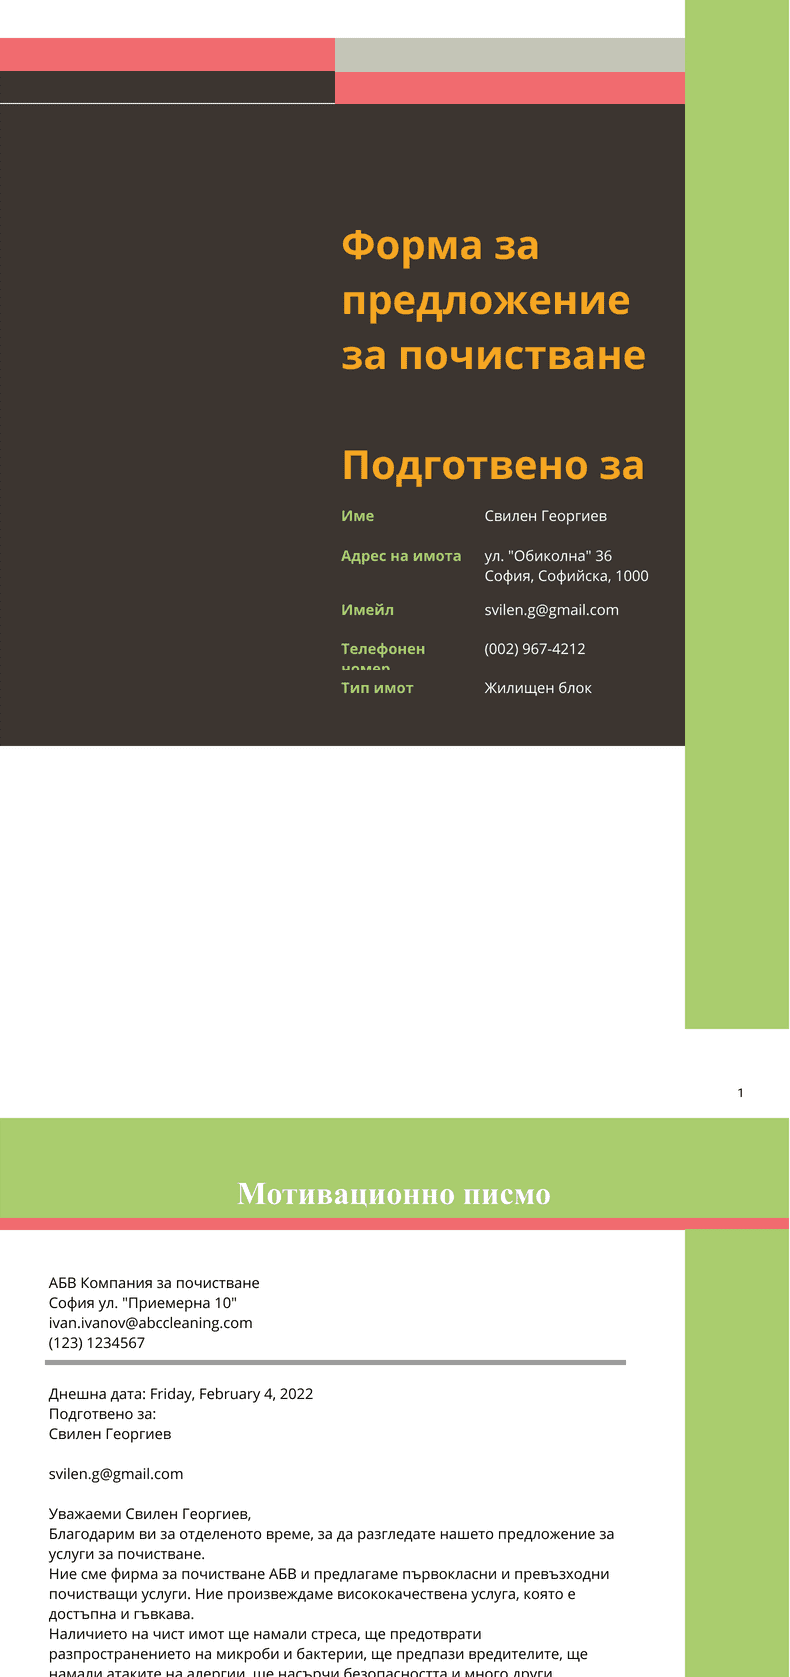 PDF Templates: Шаблон за предложение за почистване